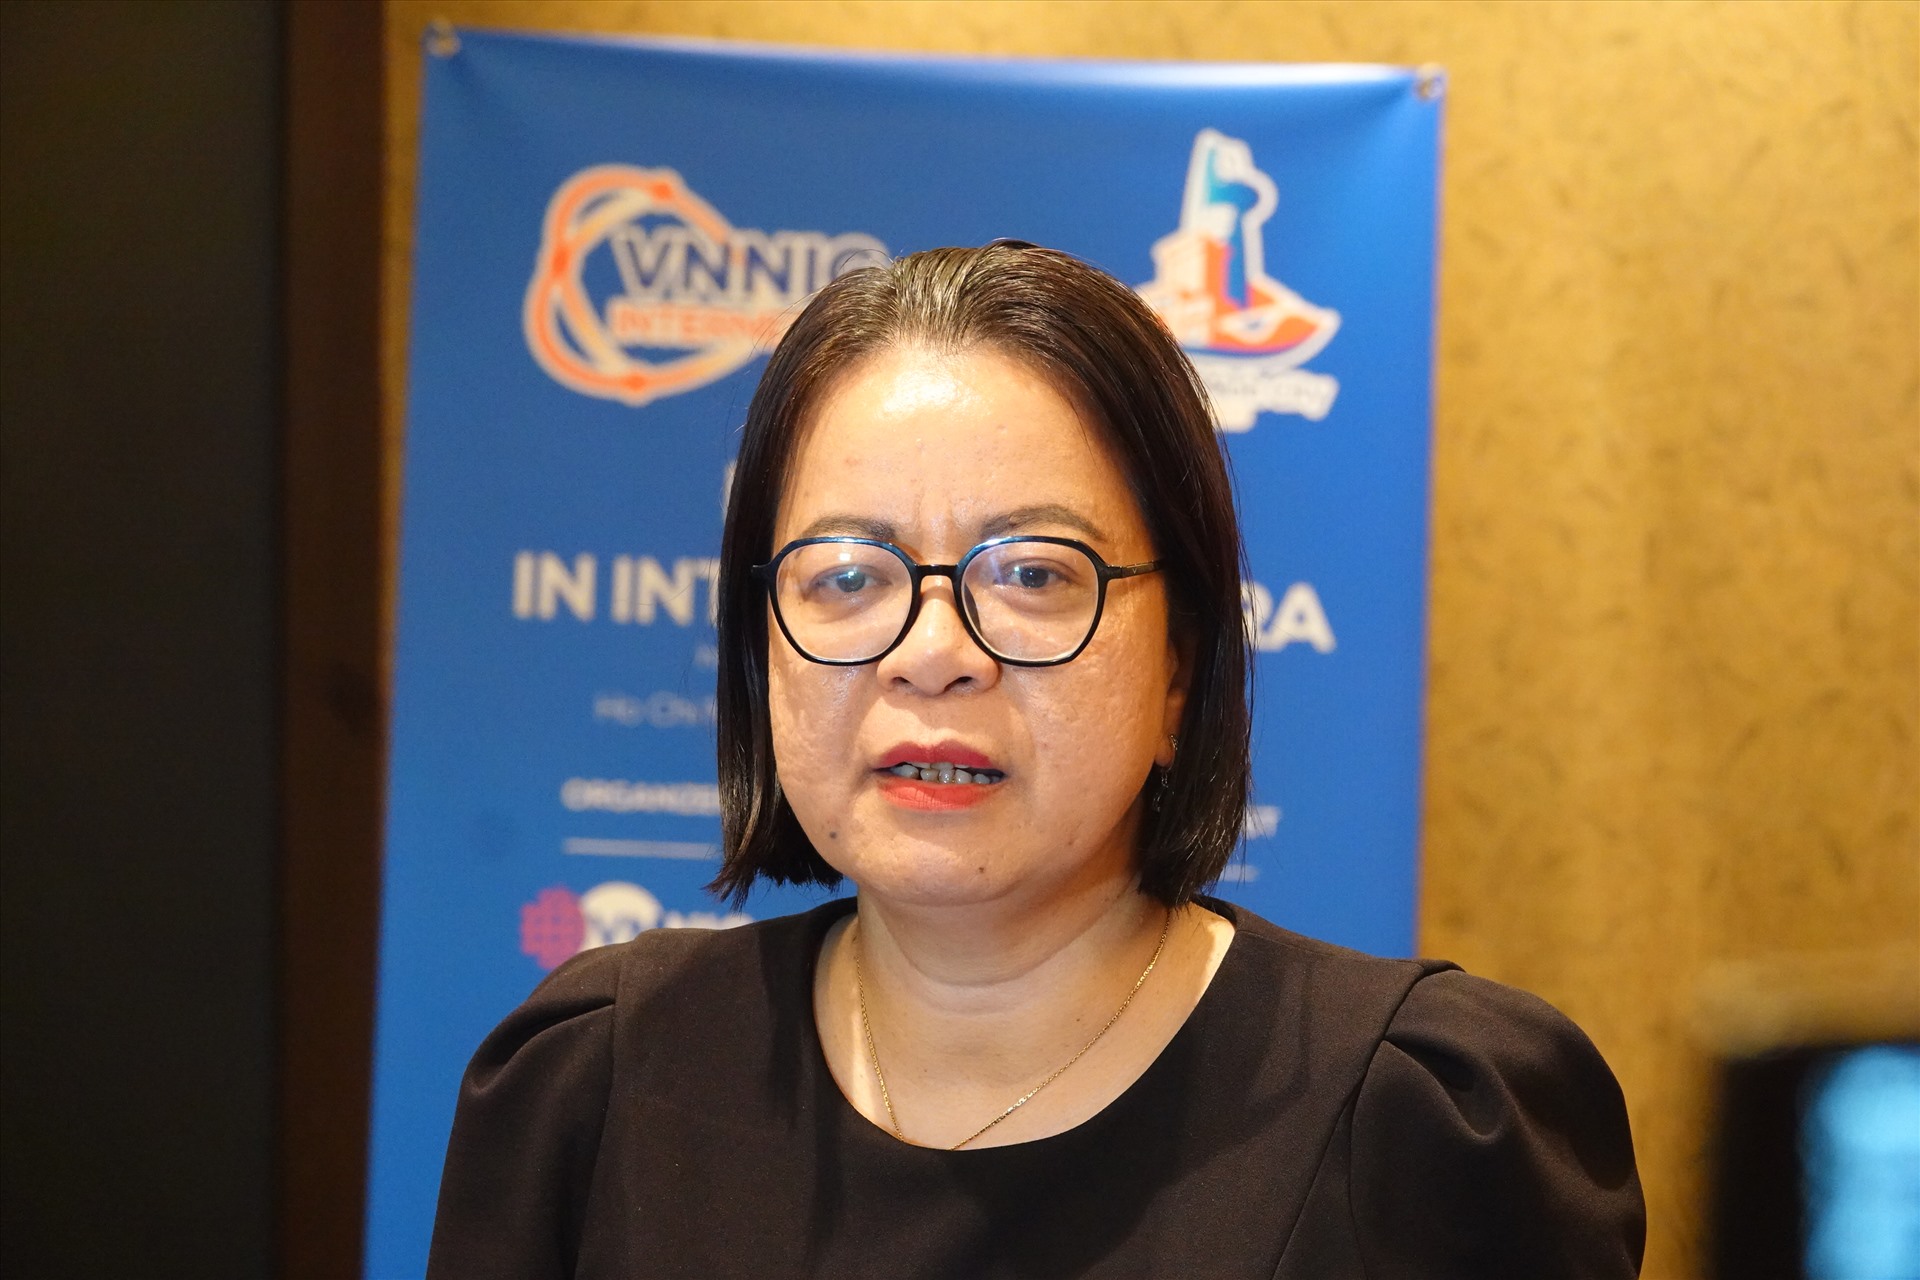 Bà Võ Thị Trung Trinh, Phó giám đốc Sở Thông tin và Truyền thông TPHCM đề cao việc quản lí internet trong kỉ nguyên thông minh. Ảnh: Nguyễn Đăng